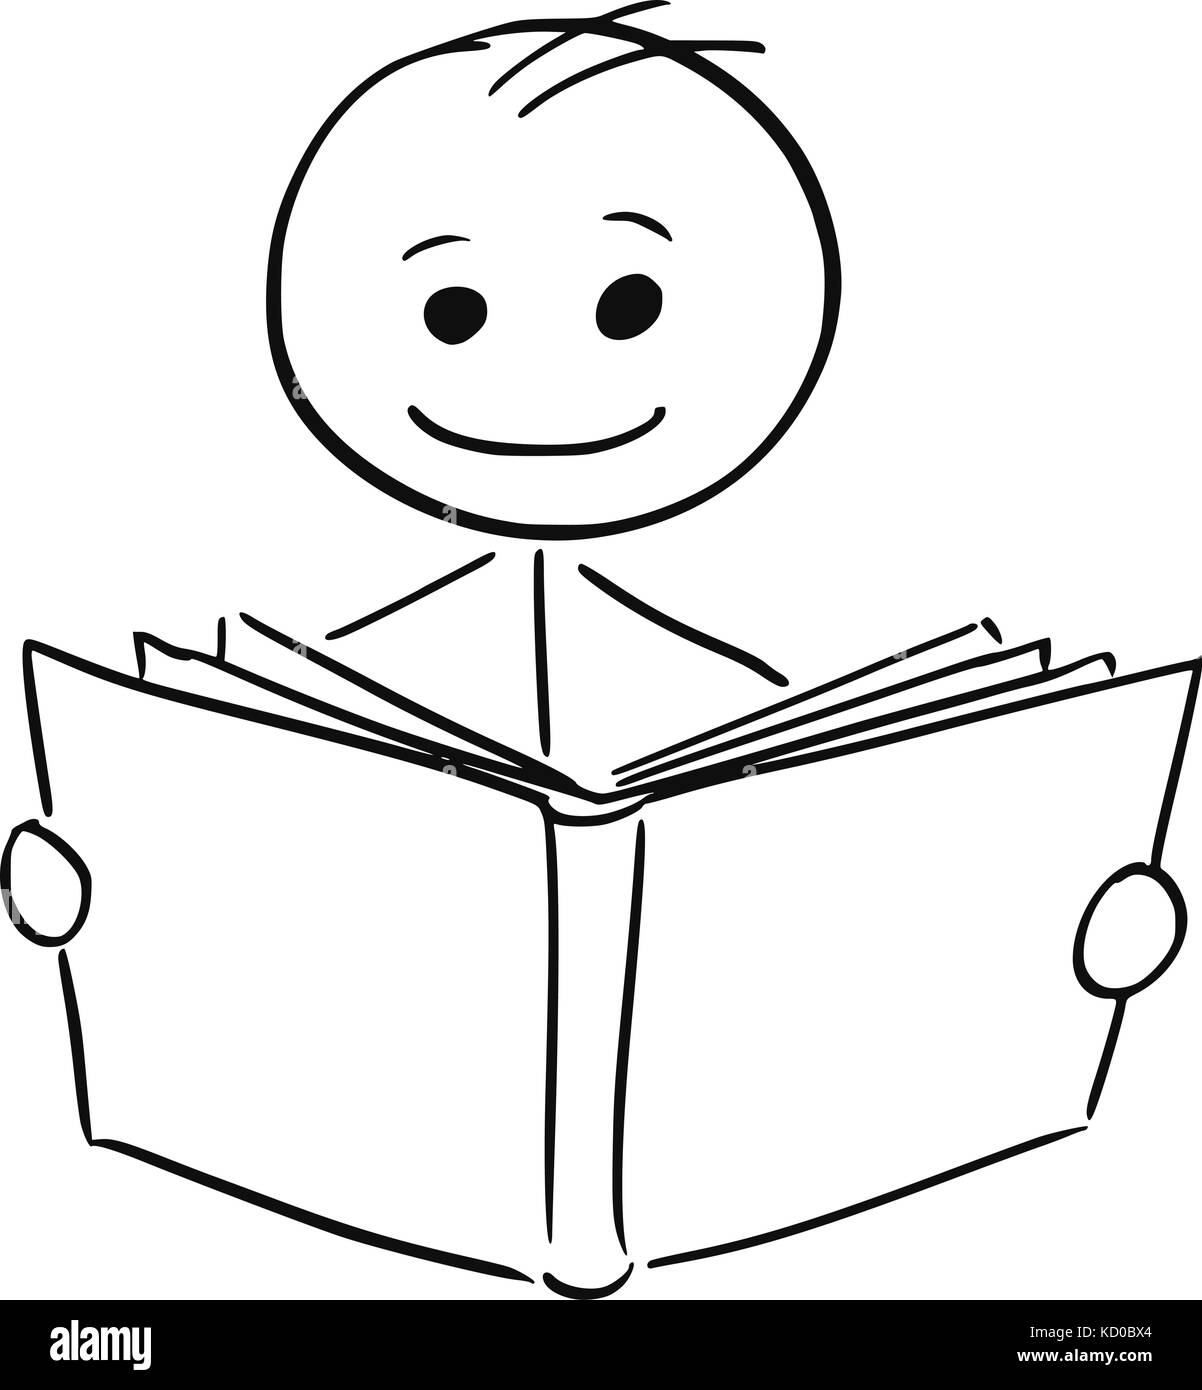 Cartoon stick Mann Abbildung: lächelnde Junge oder Mann ein Buch zu lesen. Stock Vektor